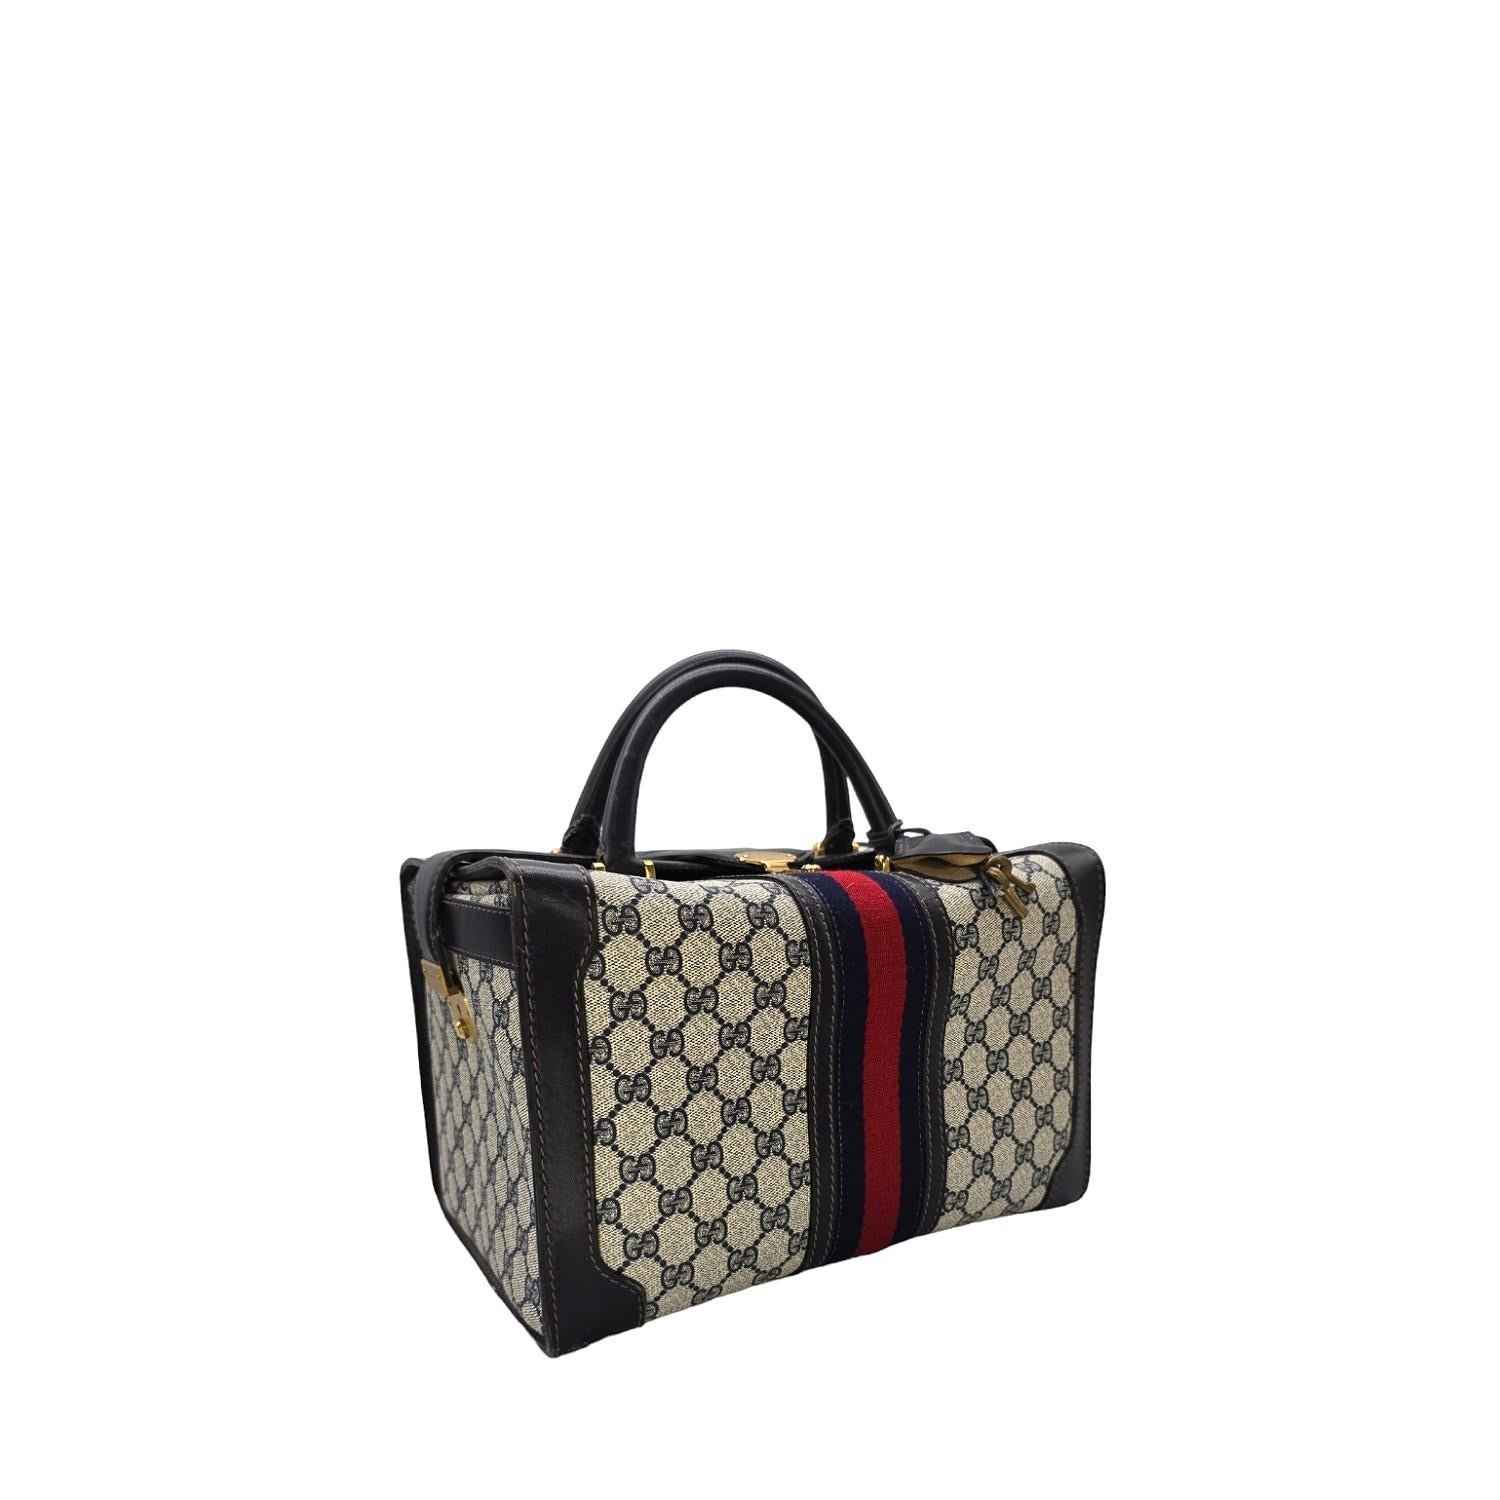 Gönnen Sie sich Luxus mit der seltenen Vintage Gucci 3-Schloss-Train Case Reisetasche. Sie ist schick und raffiniert und kann auch als Handtasche verwendet werden. Die Lederclochette und die Messingschlüssel verleihen der Tasche einen eleganten